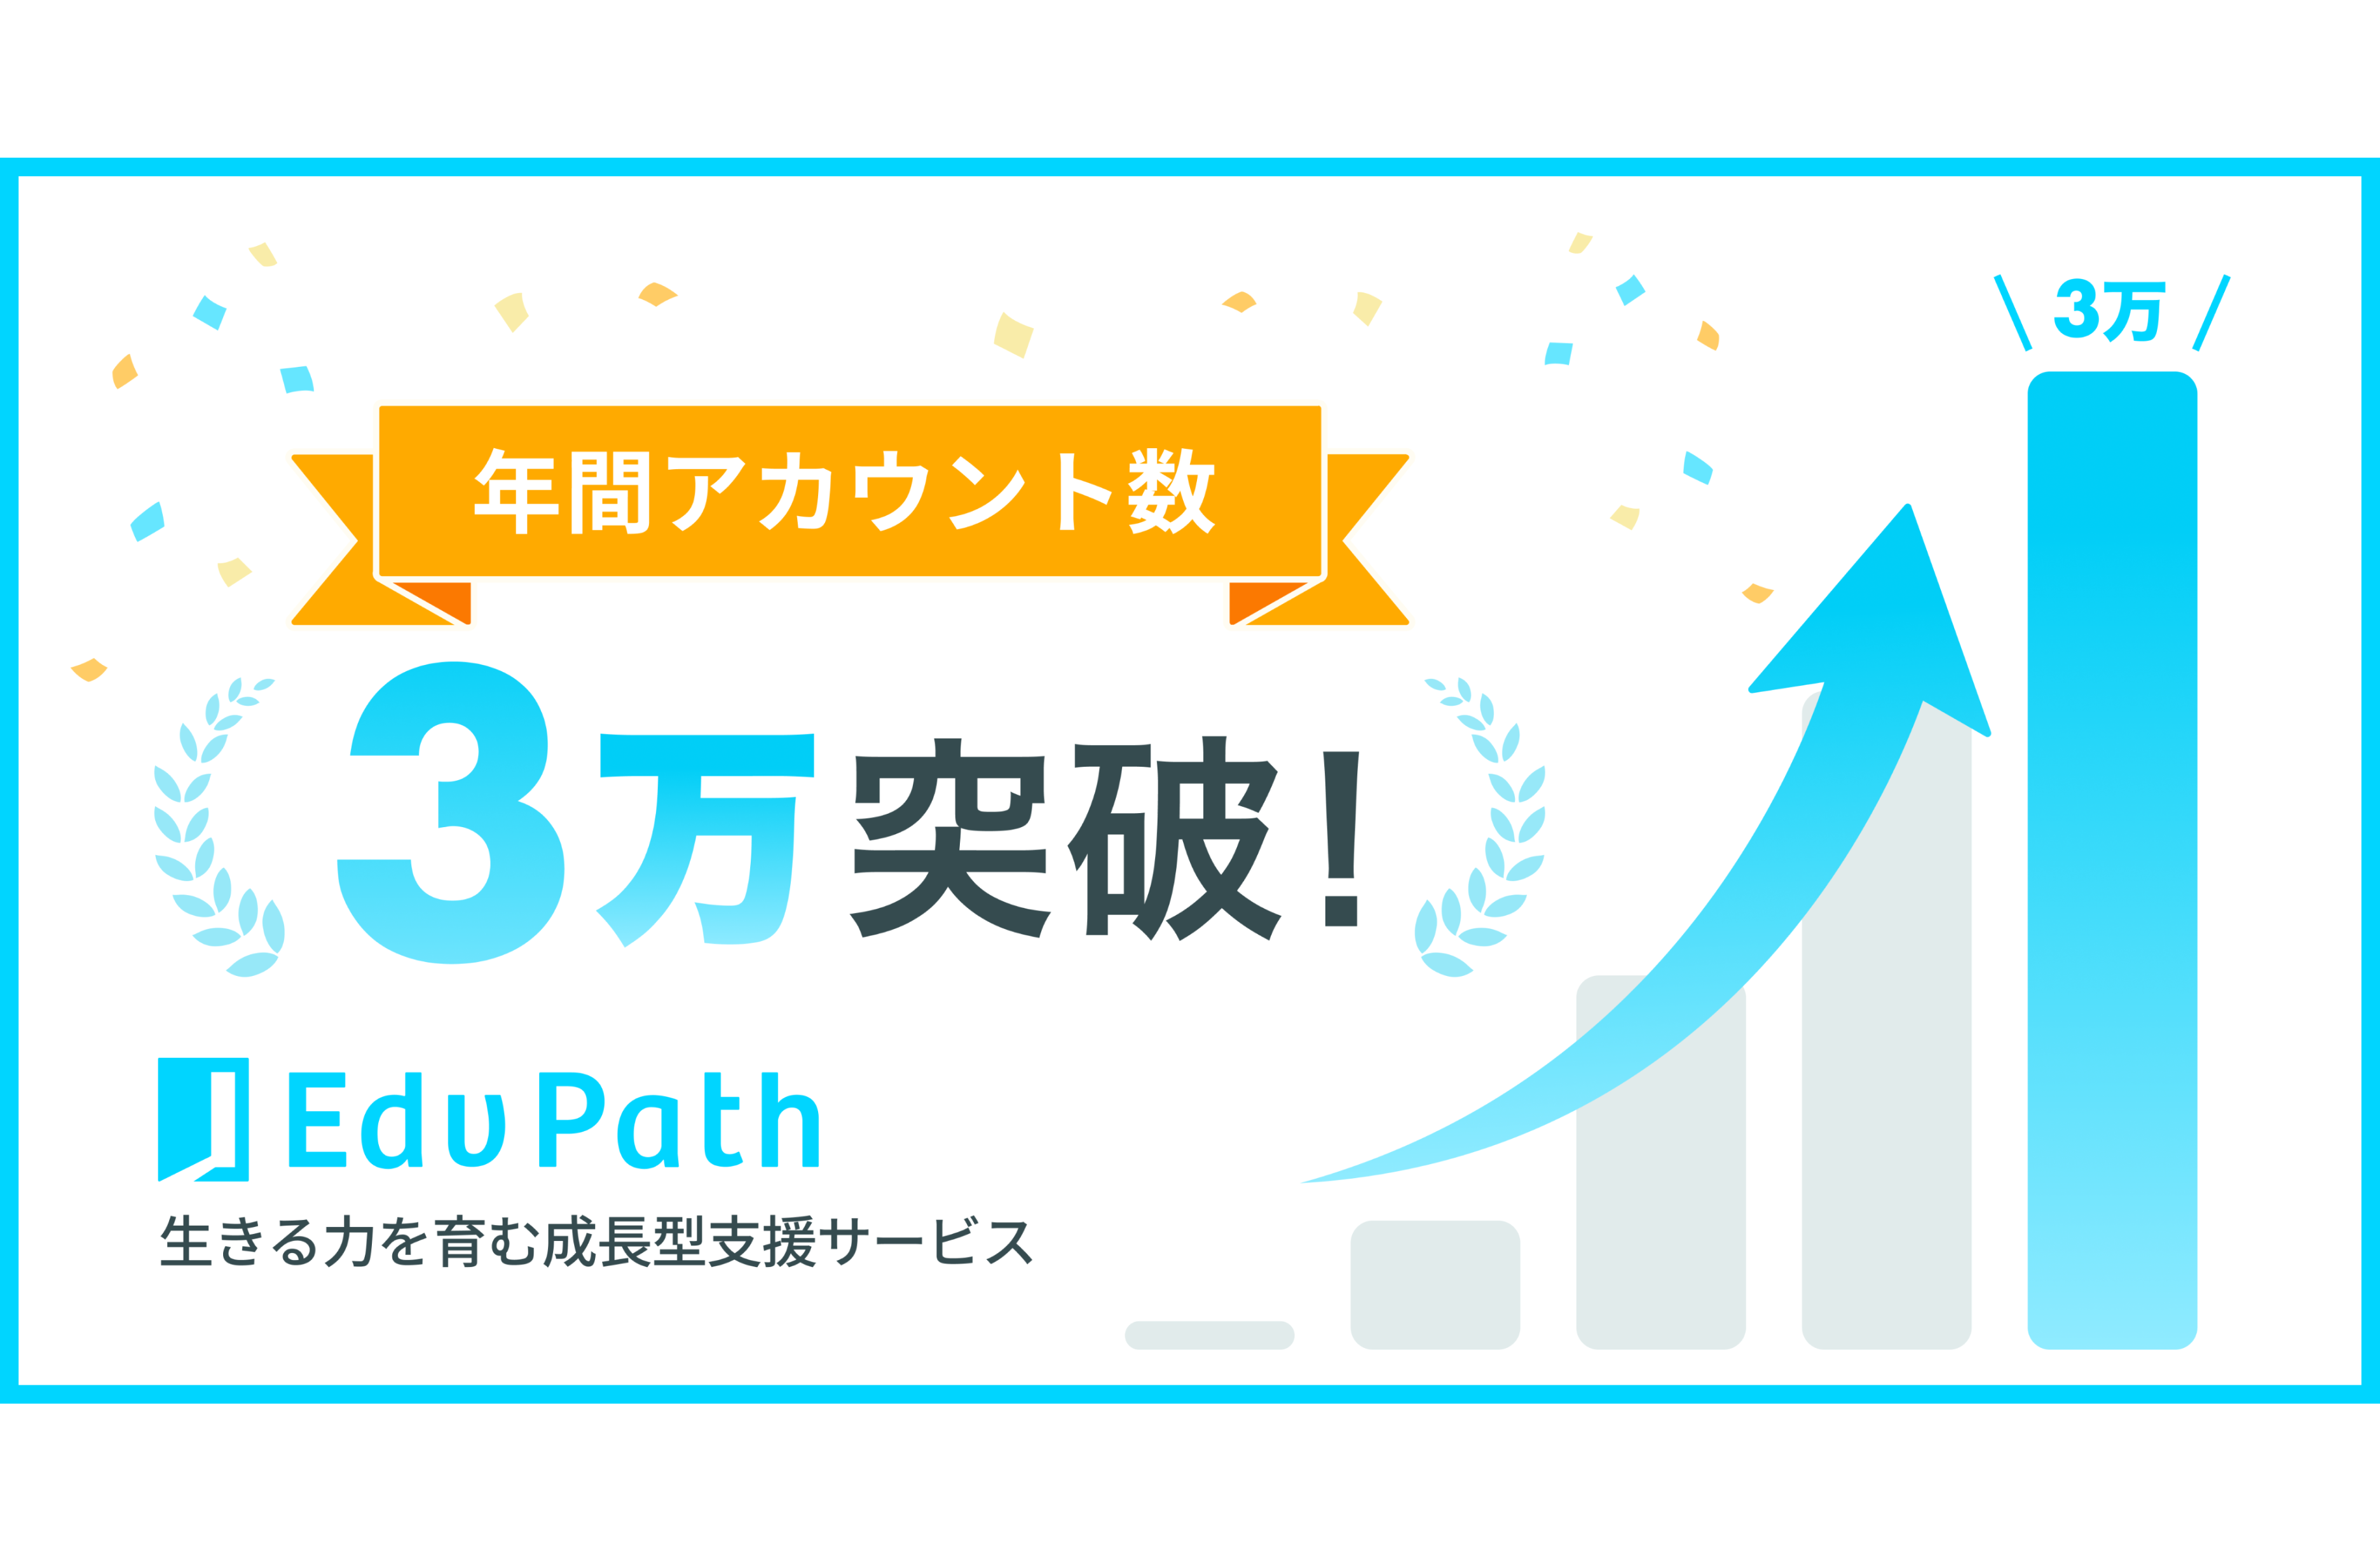 【プレスリリース】生きる力を育む成長型支援サービス「Edv Path」年間アカウント数3万突破！